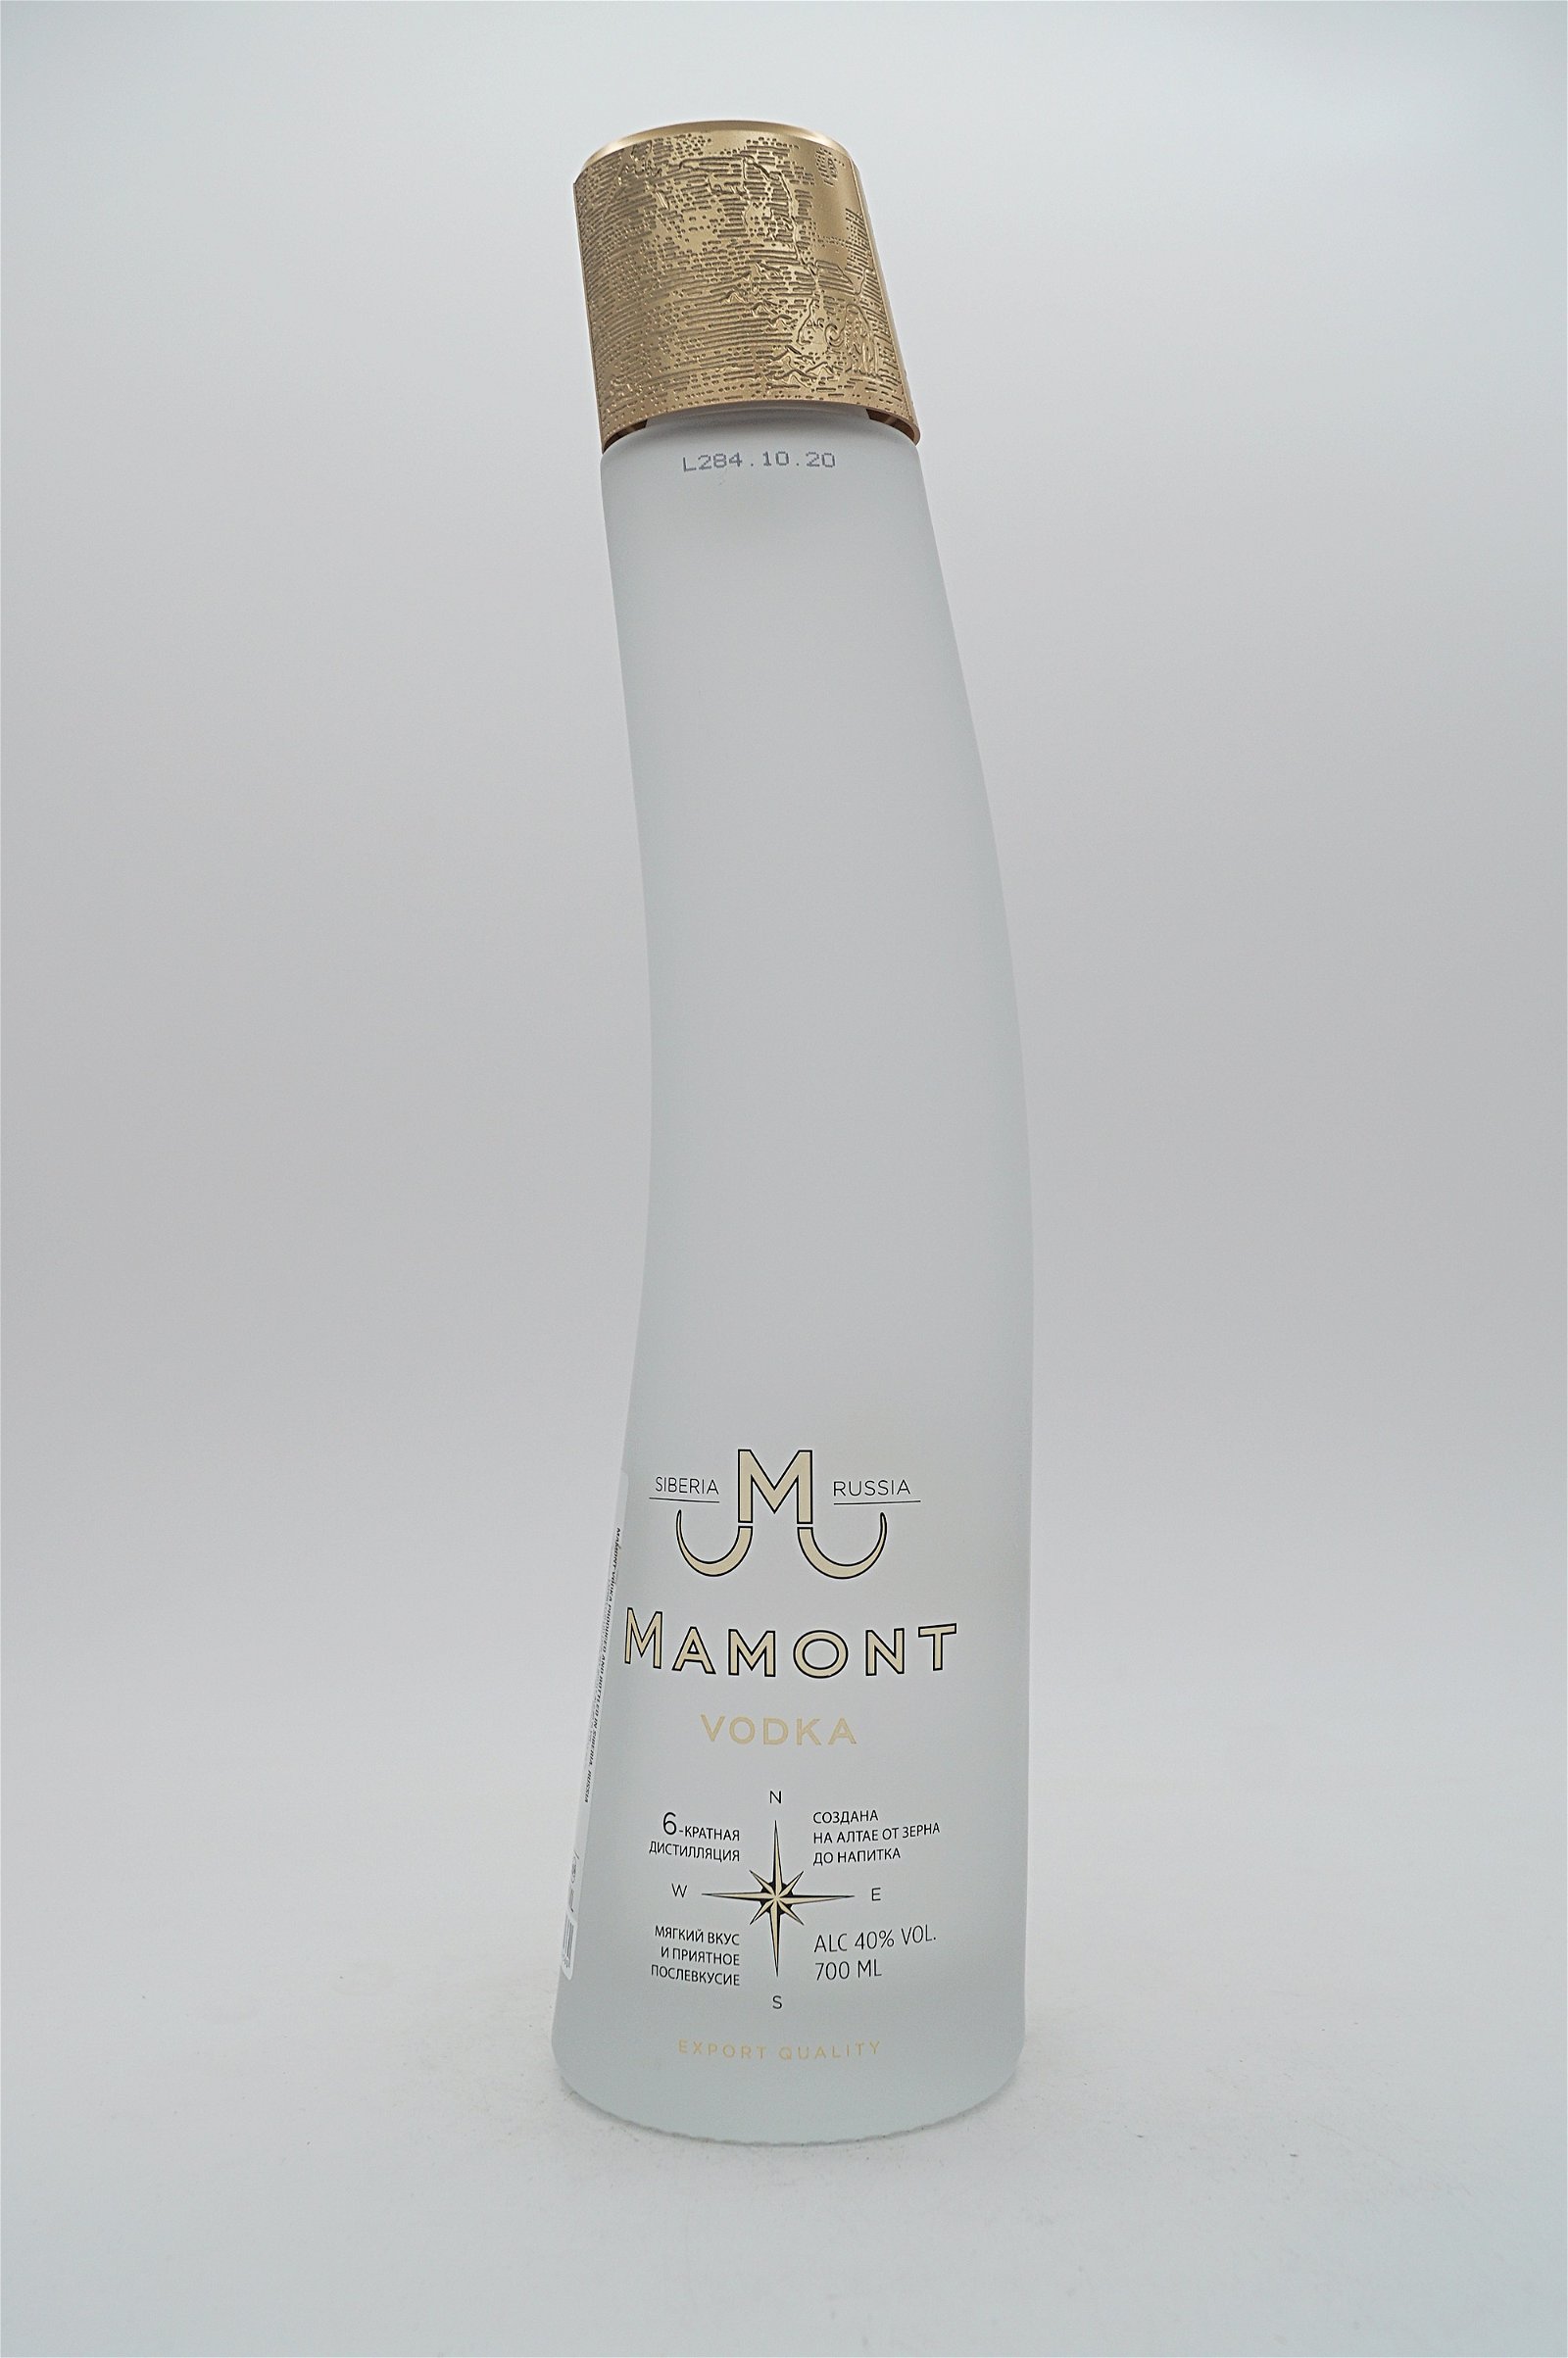 Mamont Russia Vodka